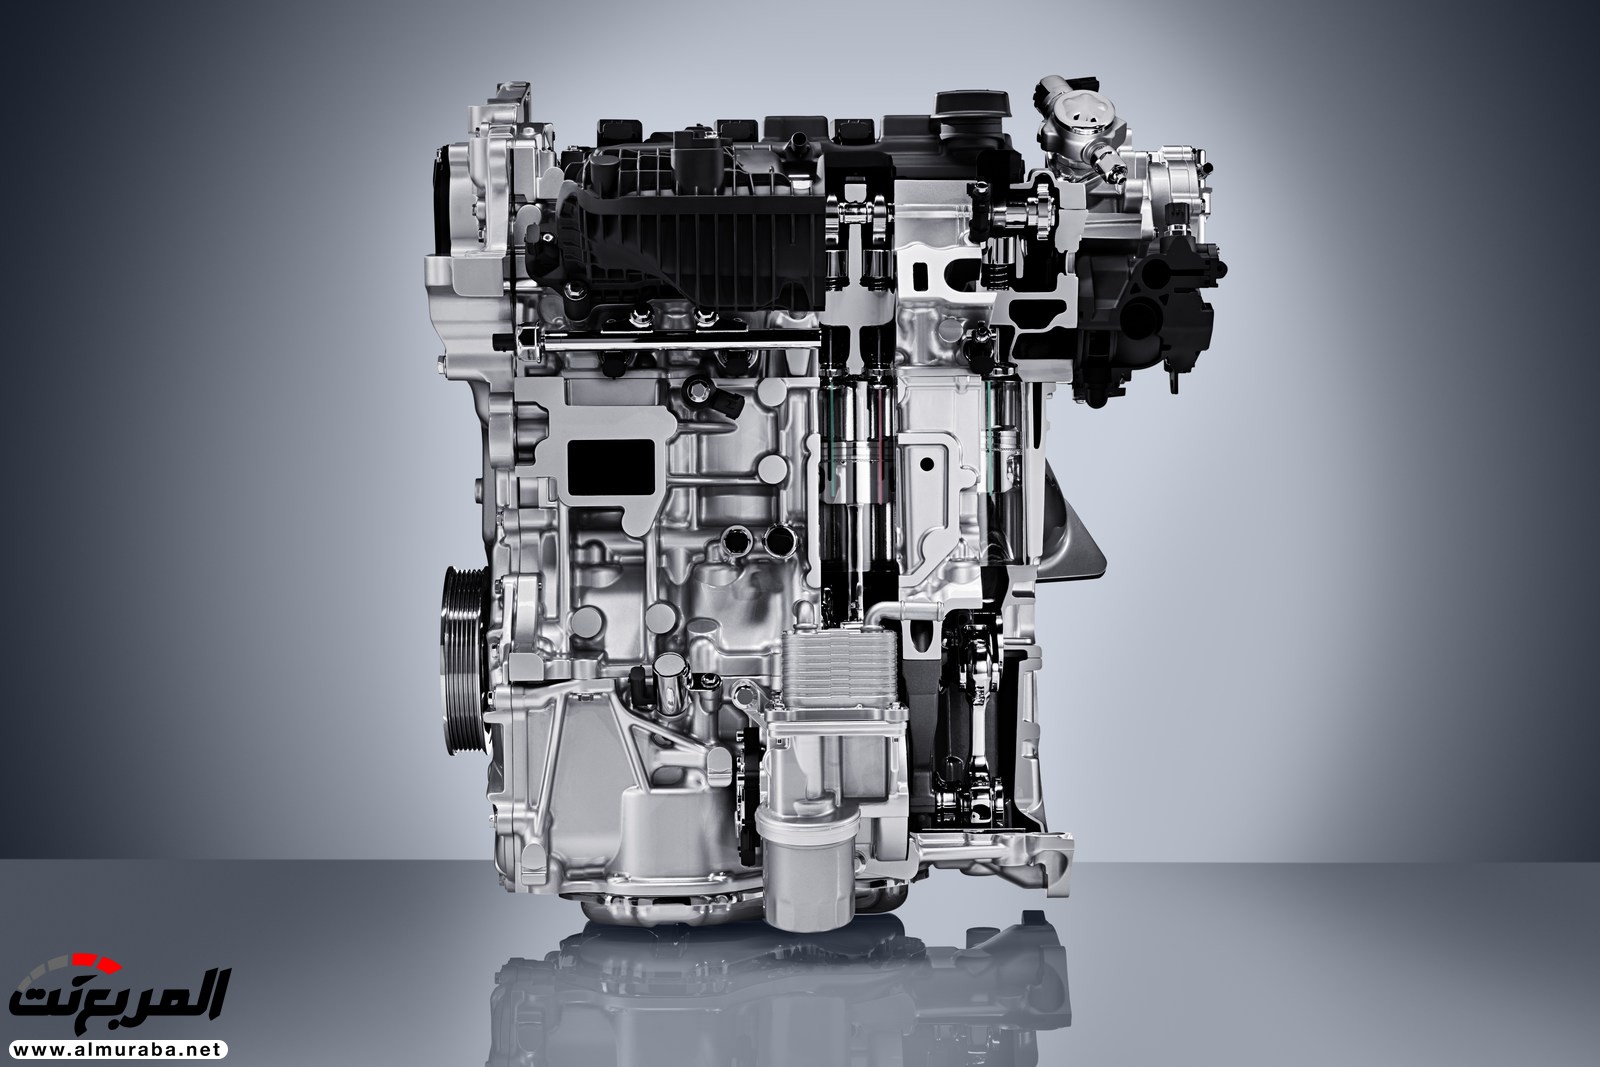 إنفينيتي QX50 الجديدة كلياً 2019 تظهر رسمياً بمحرك هو الأكثر تطوراً 26